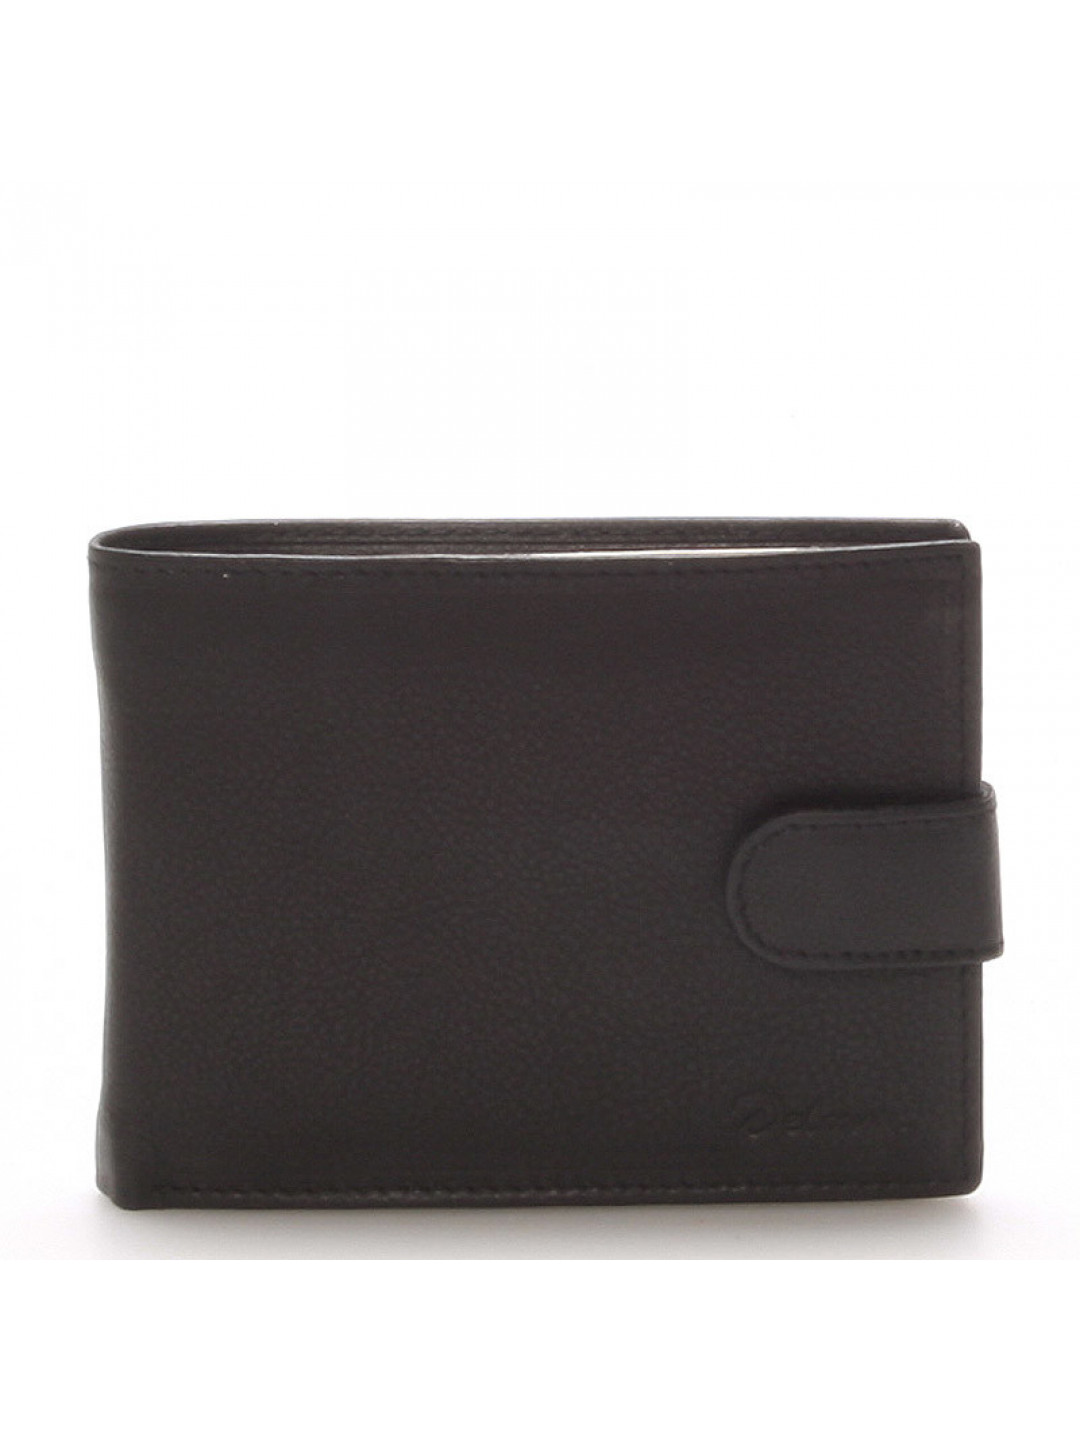 Kožená peněženka DELAMI Elegance černá